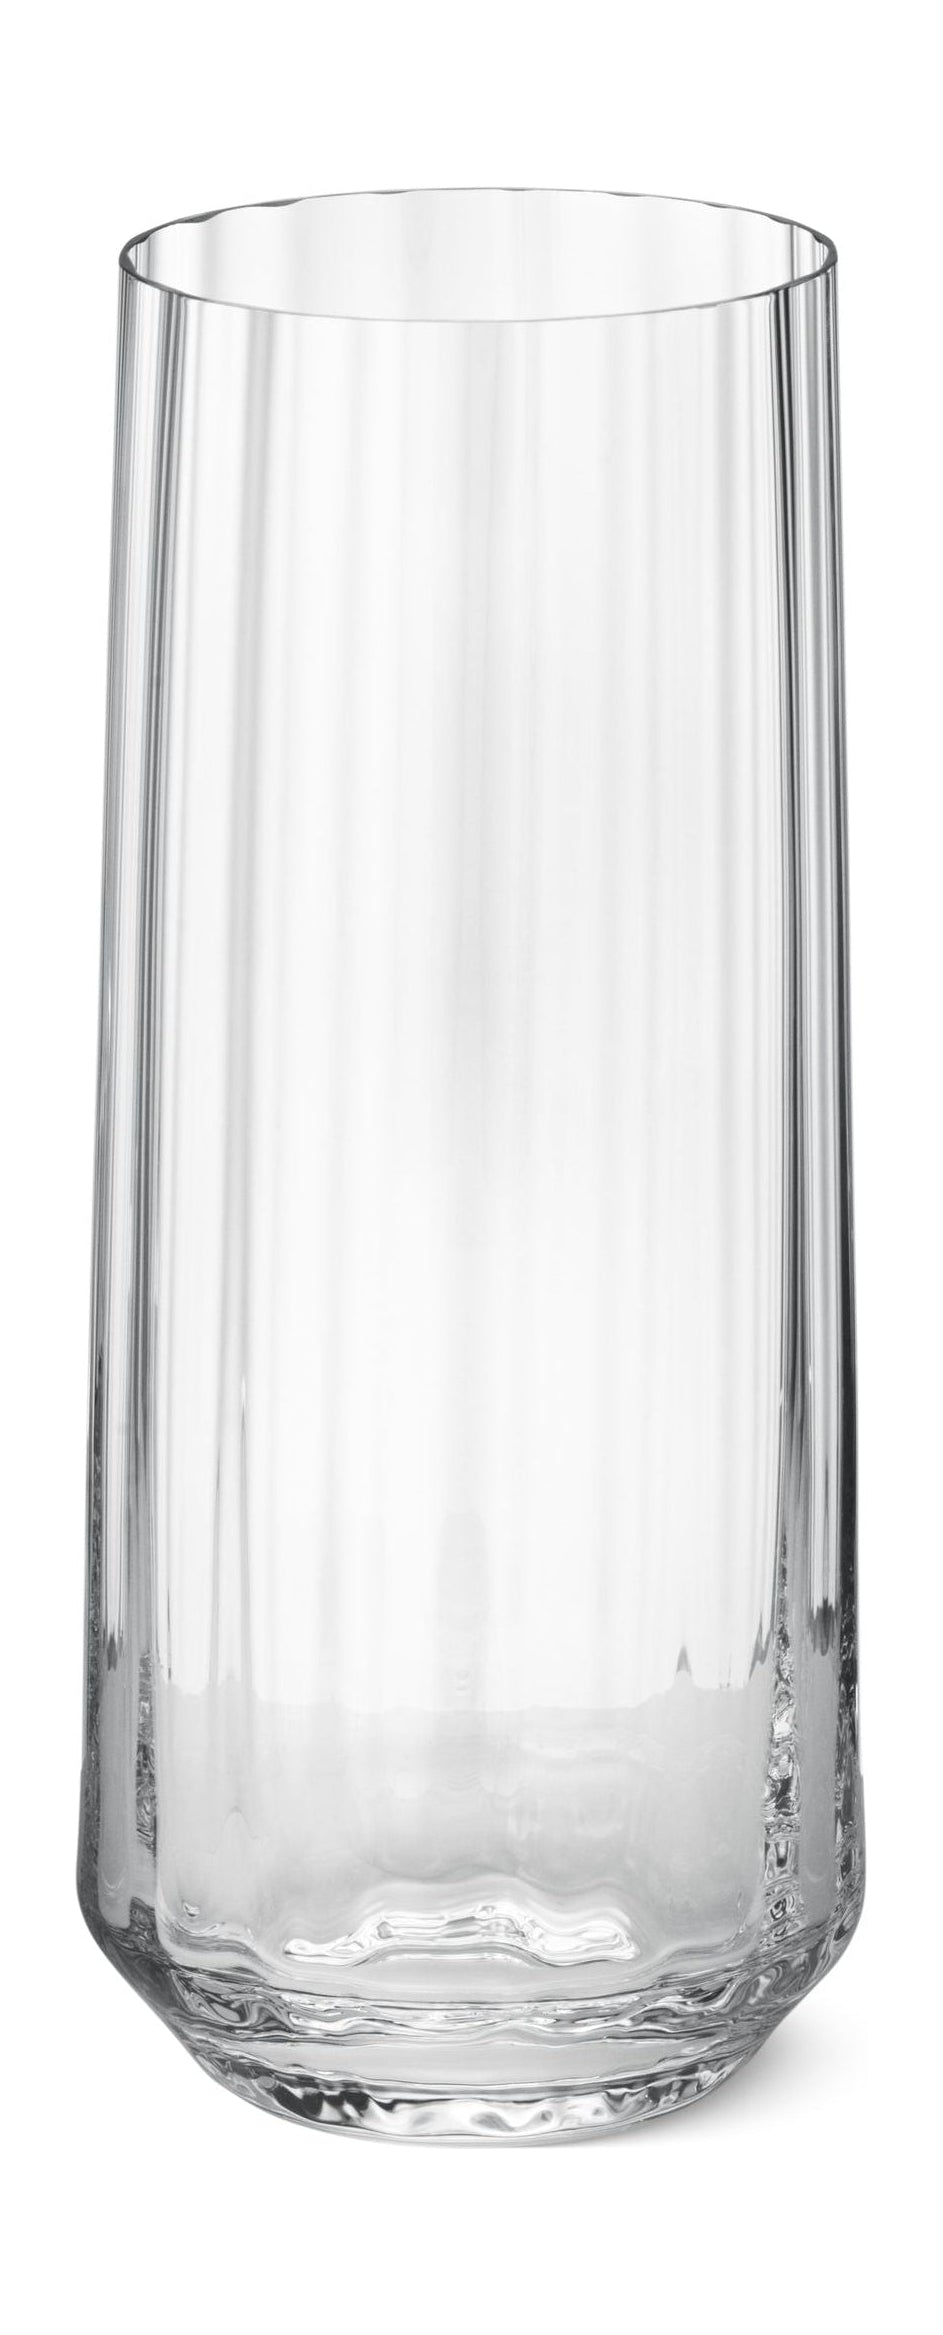 Georg Jensen Bernadotte Highball Glass 45 Cl 6 Pcs.